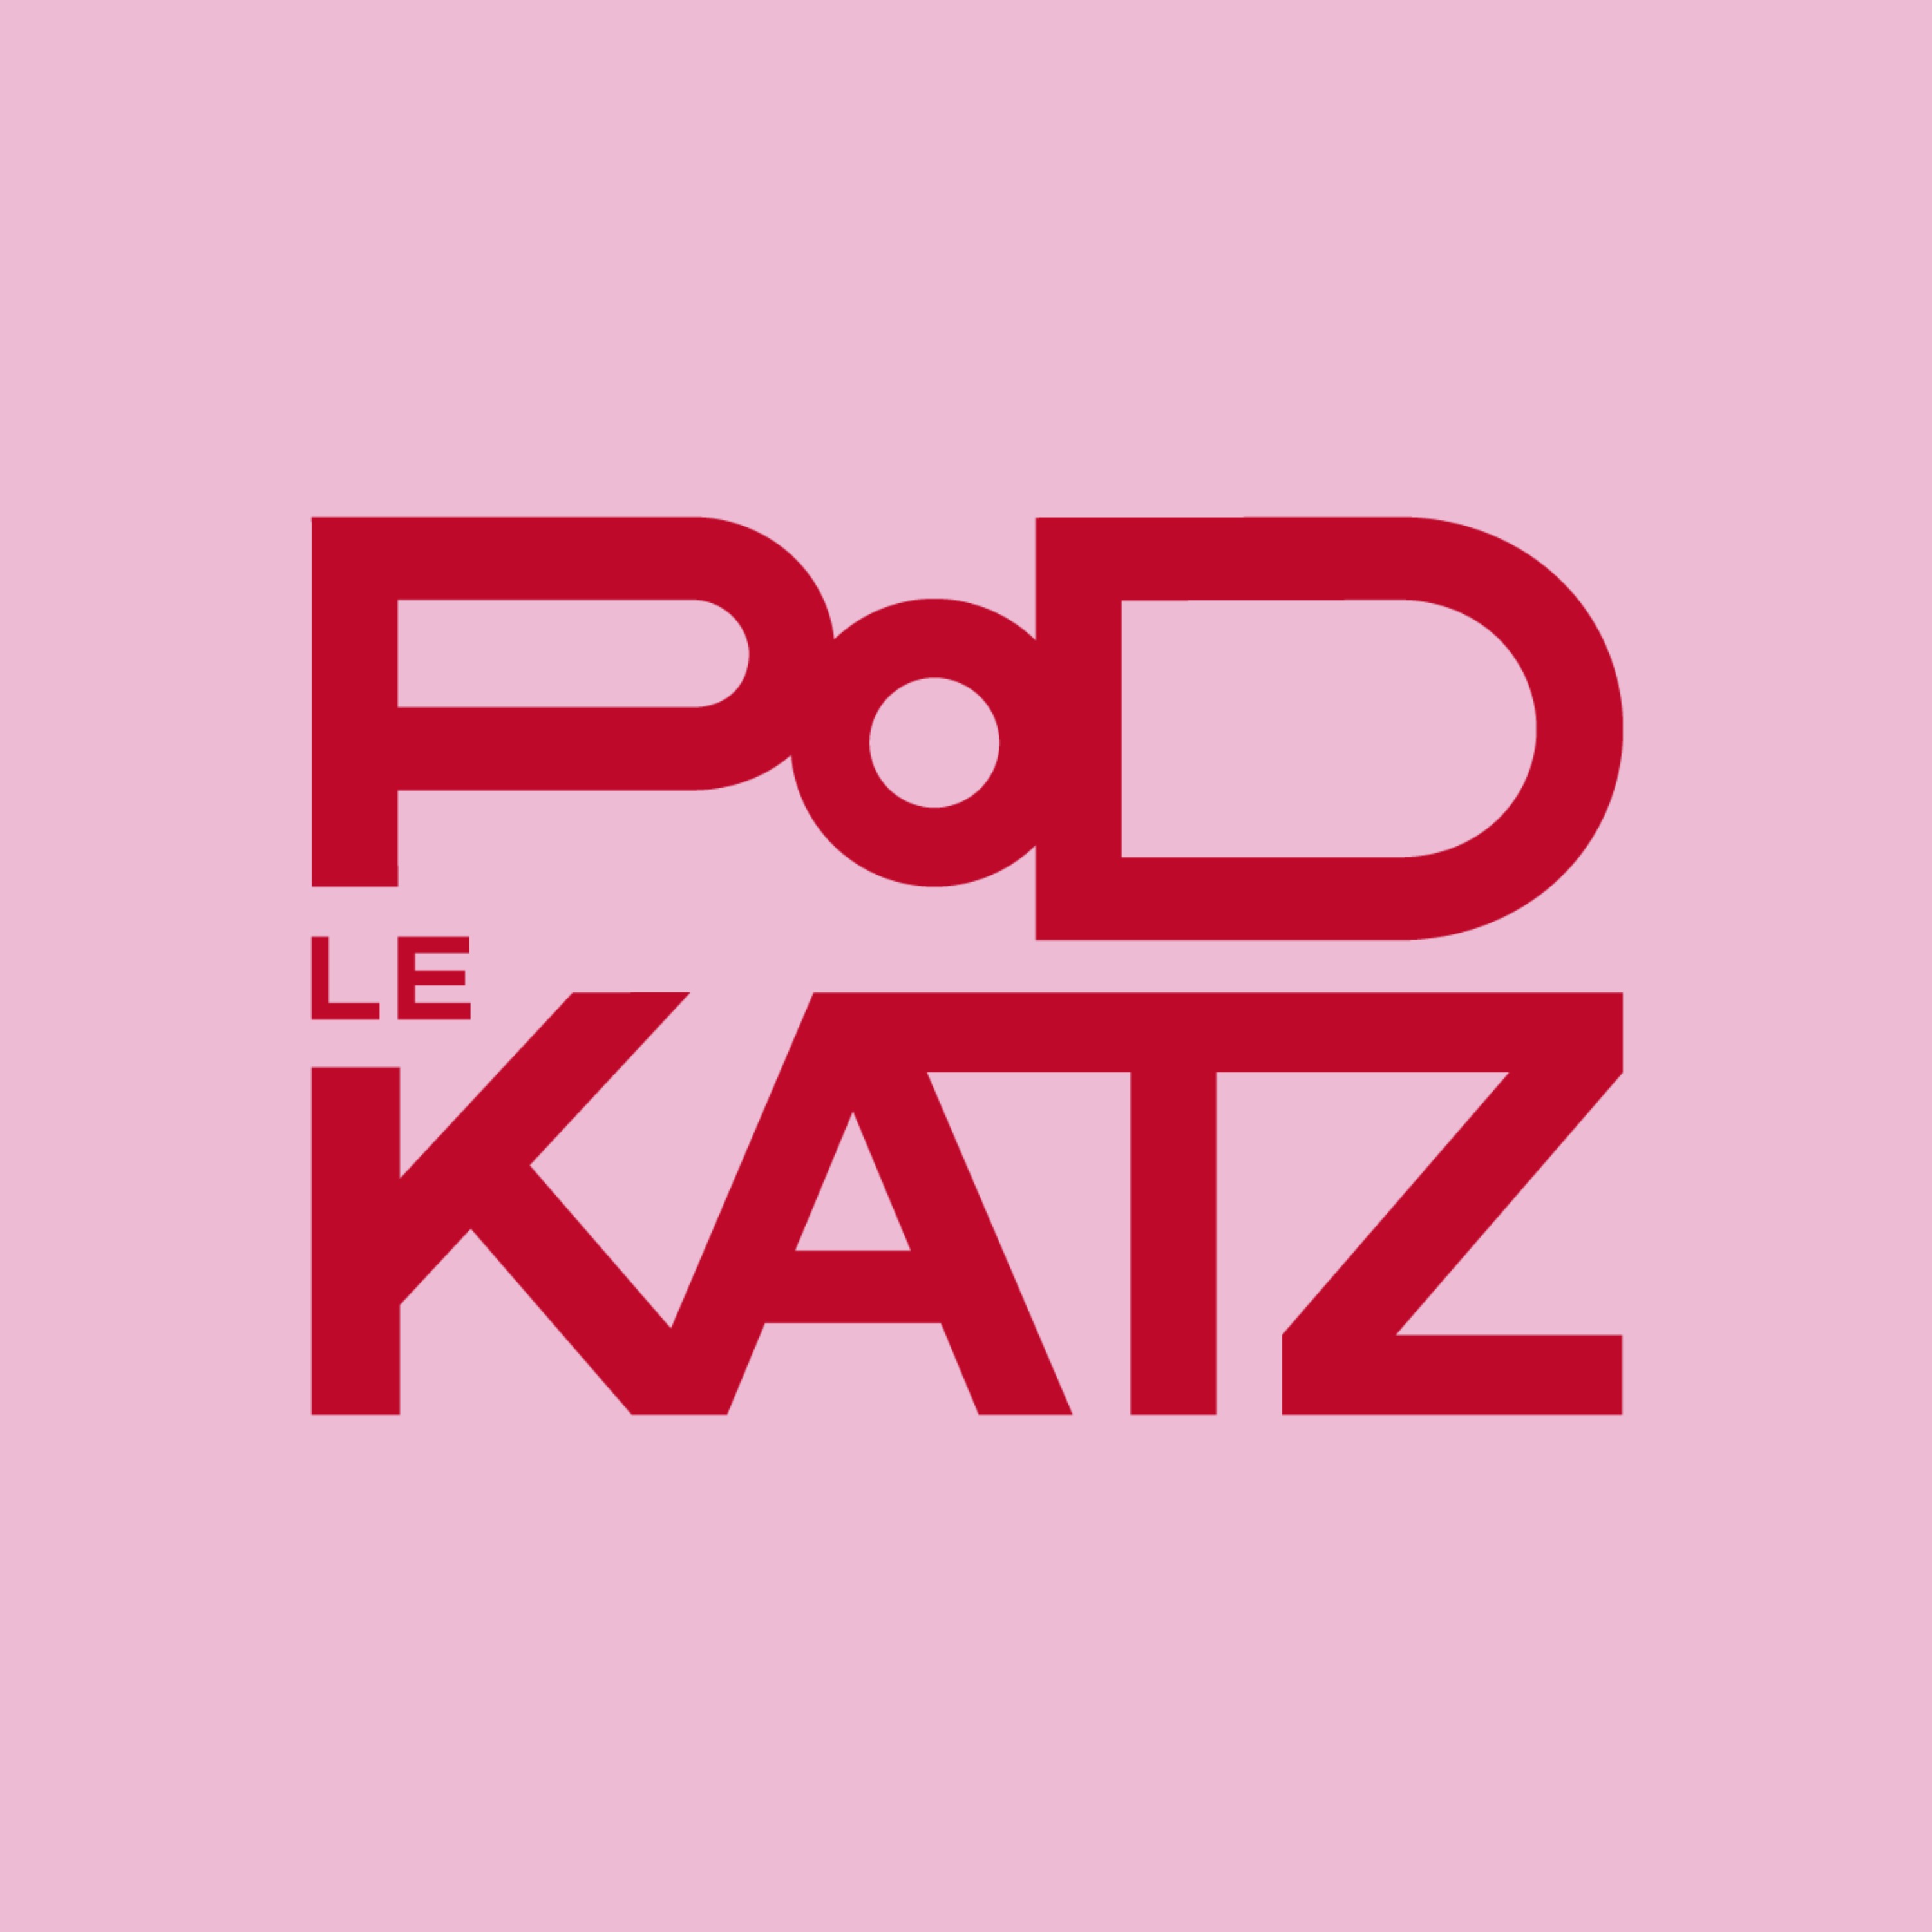 Le Podkatz - La jalousie excessive